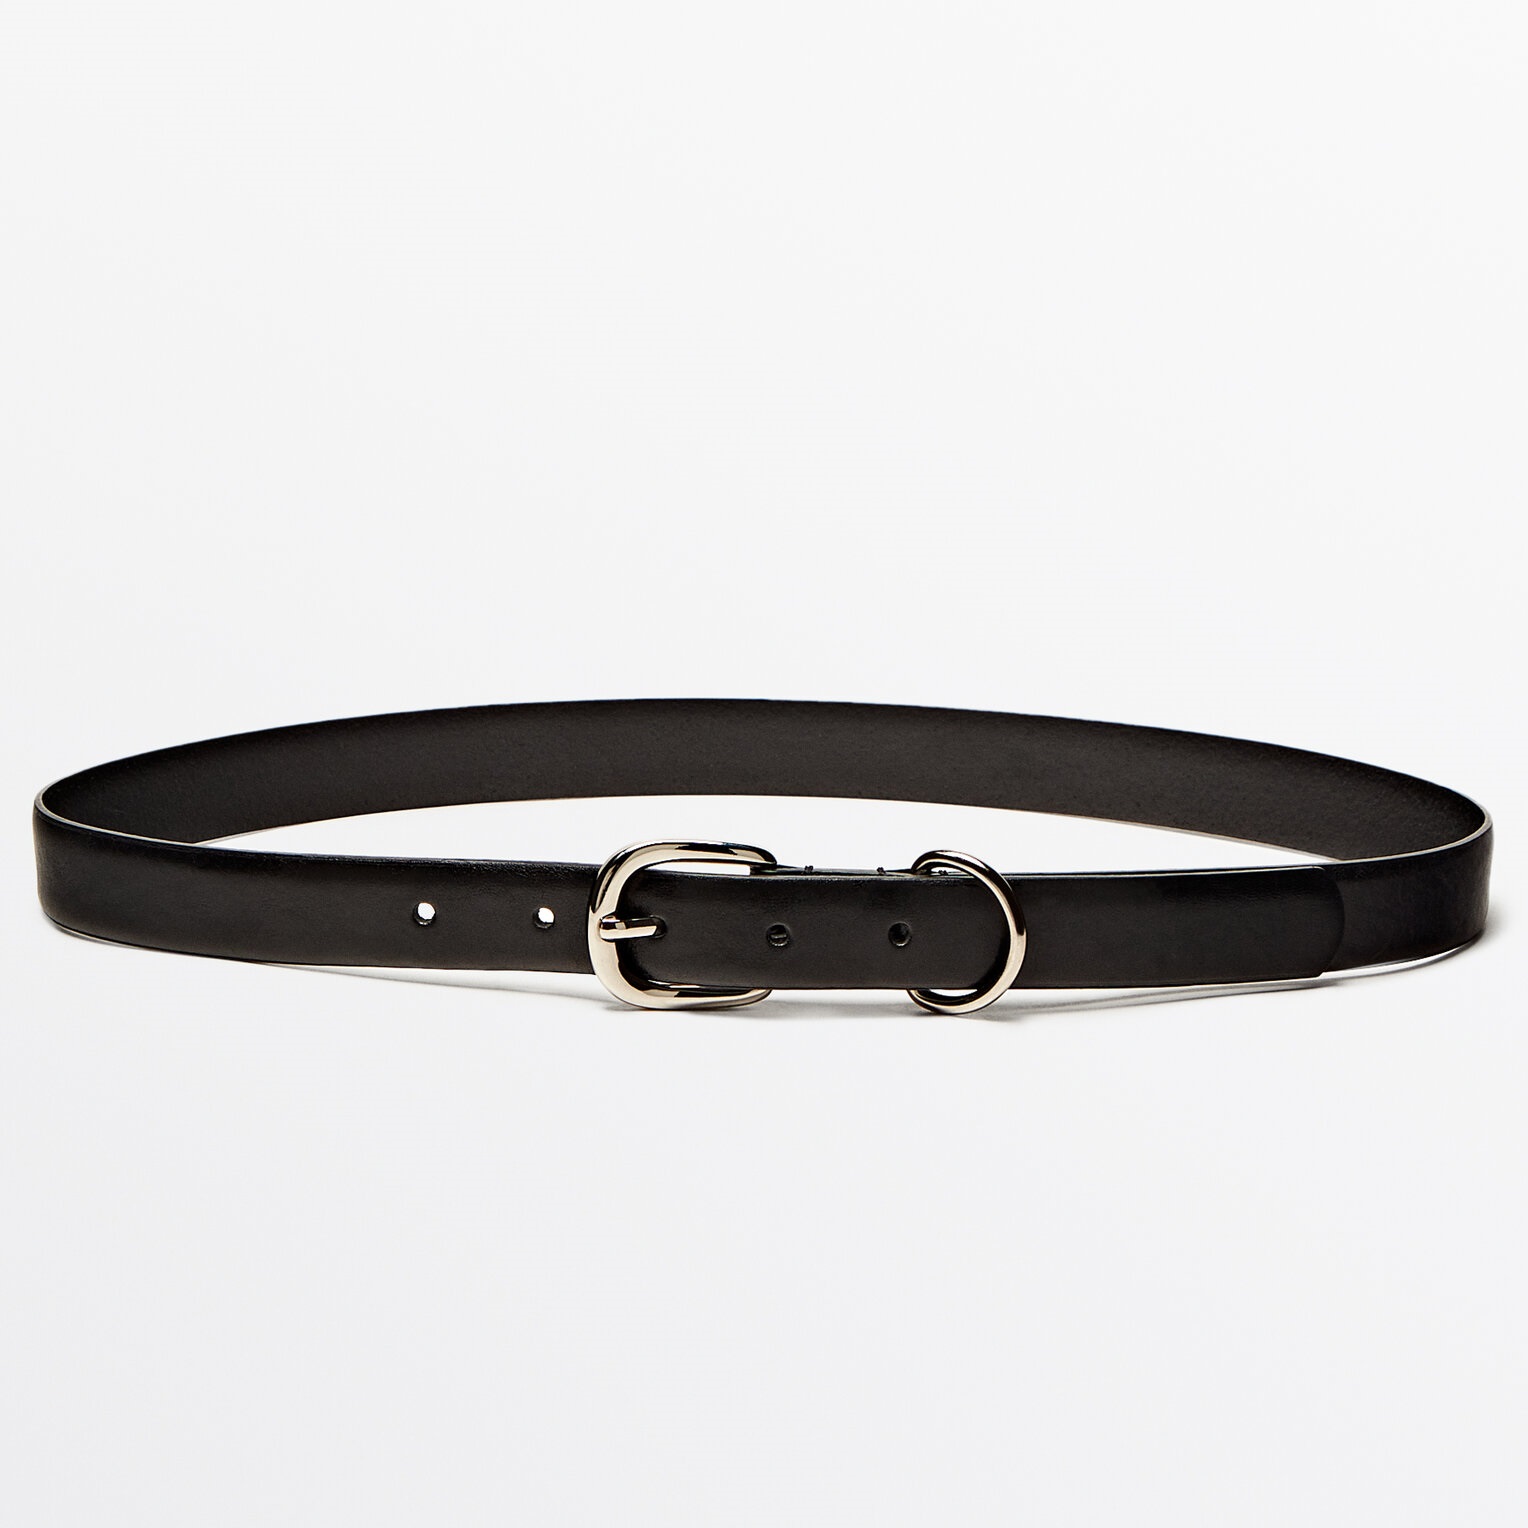 Ремень Massimo Dutti Leather With Metal Loop, черный